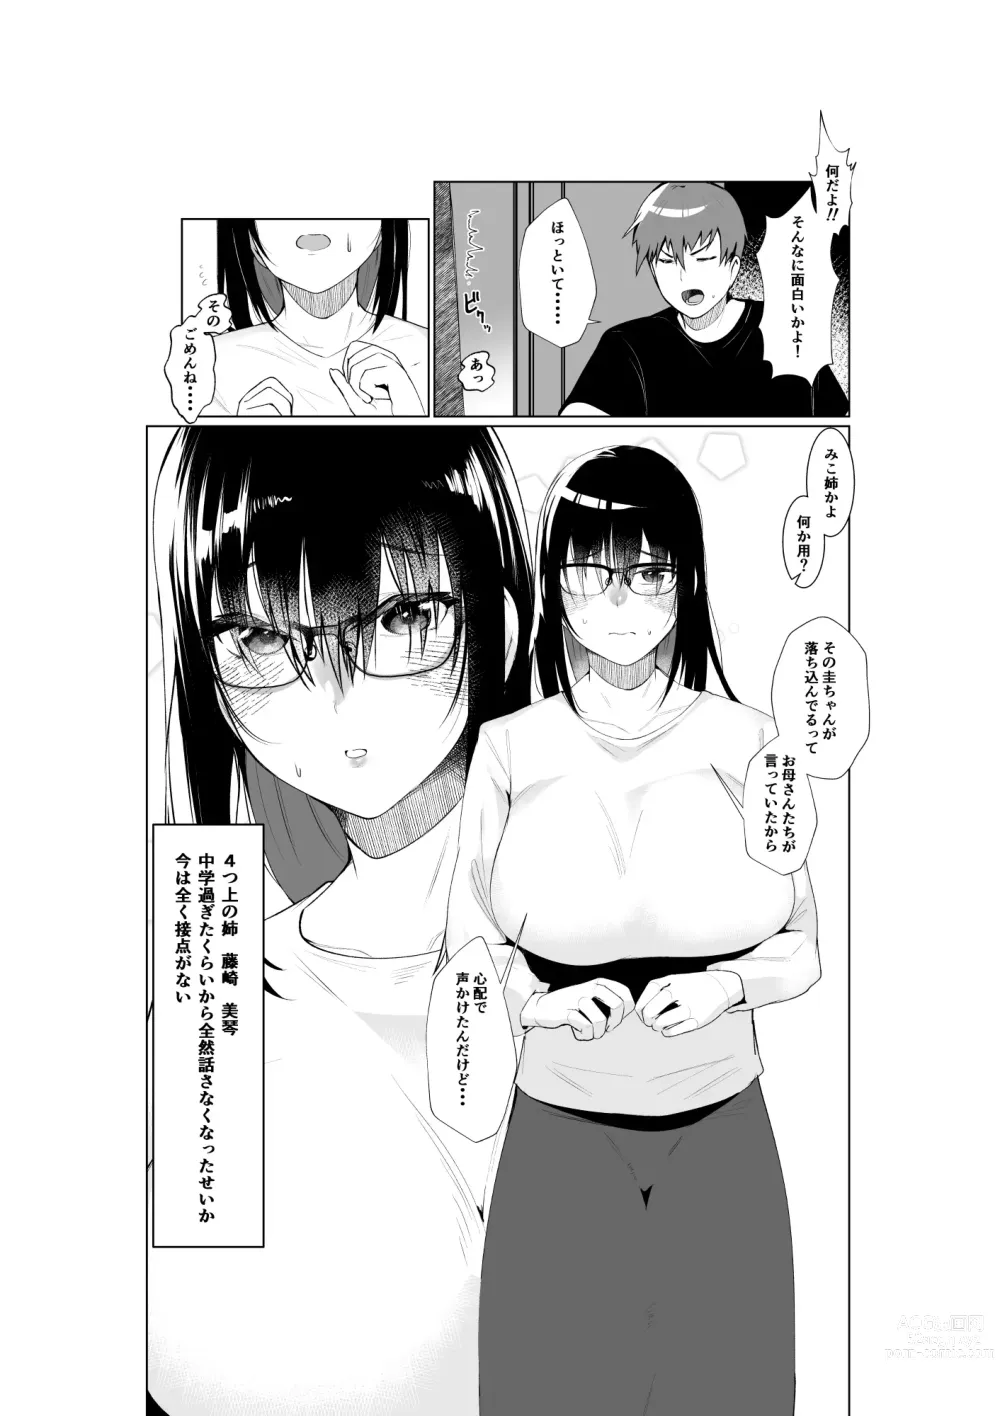 Page 4 of doujinshi Ane to Tsunagu